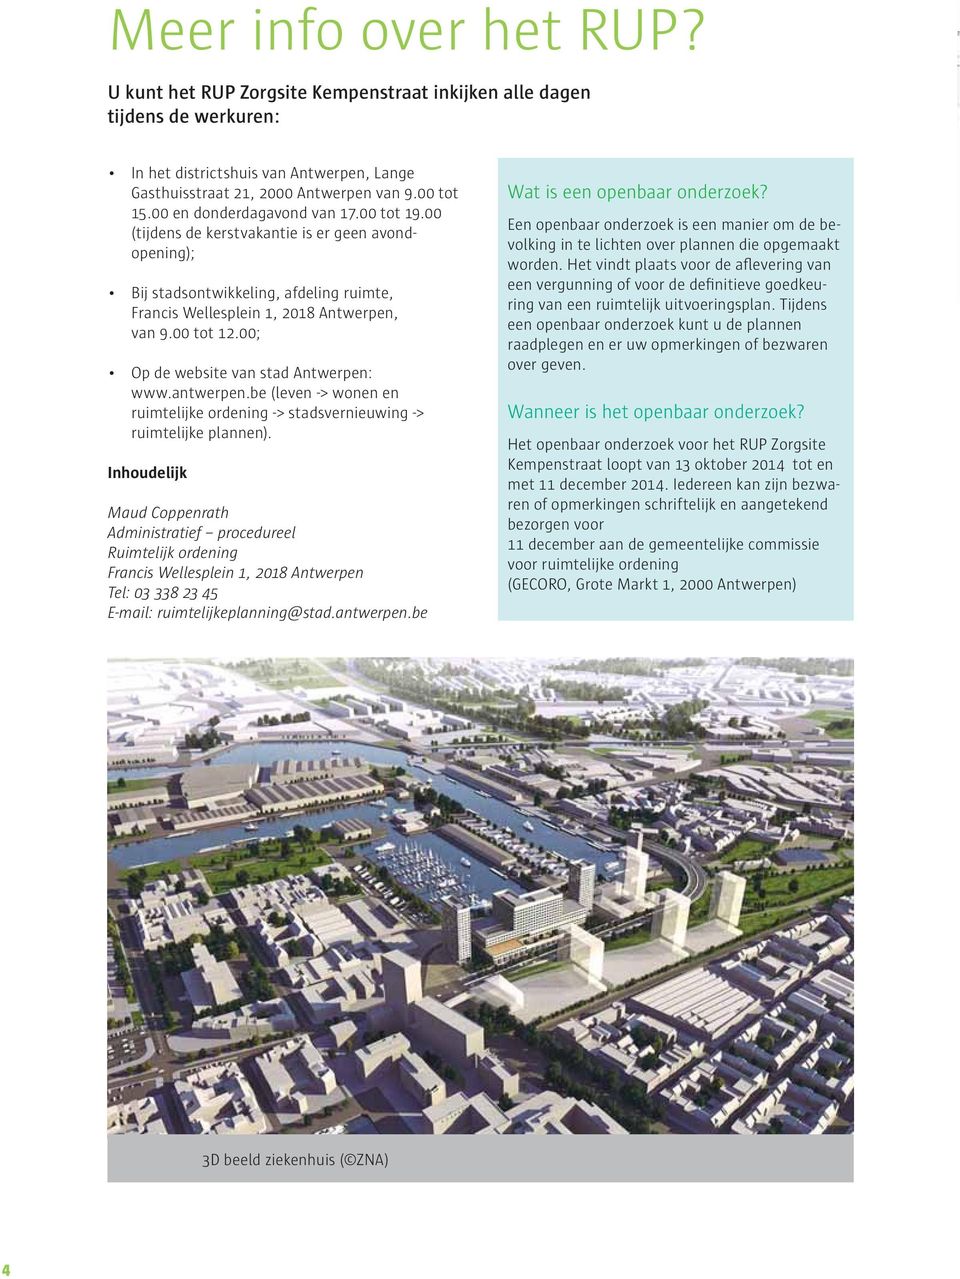 00; Op de website van stad Antwerpen: www.antwerpen.be (leven -> wonen en ruimtelijke ordening -> stadsvernieuwing -> ruimtelijke plannen).